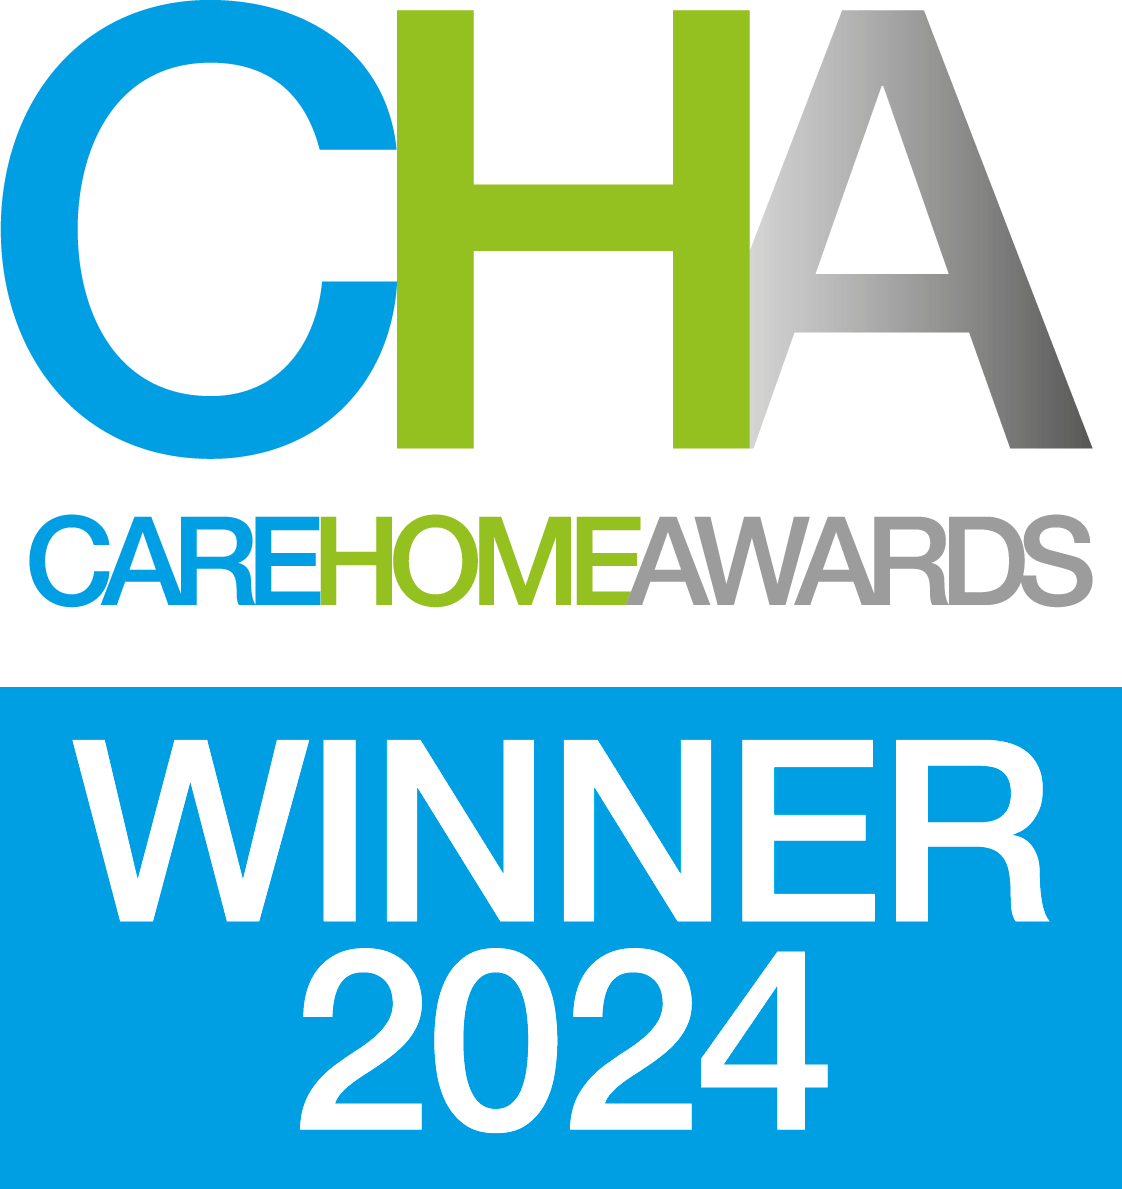 Care Home Awards 2024 winner - Best for Nursing Care 